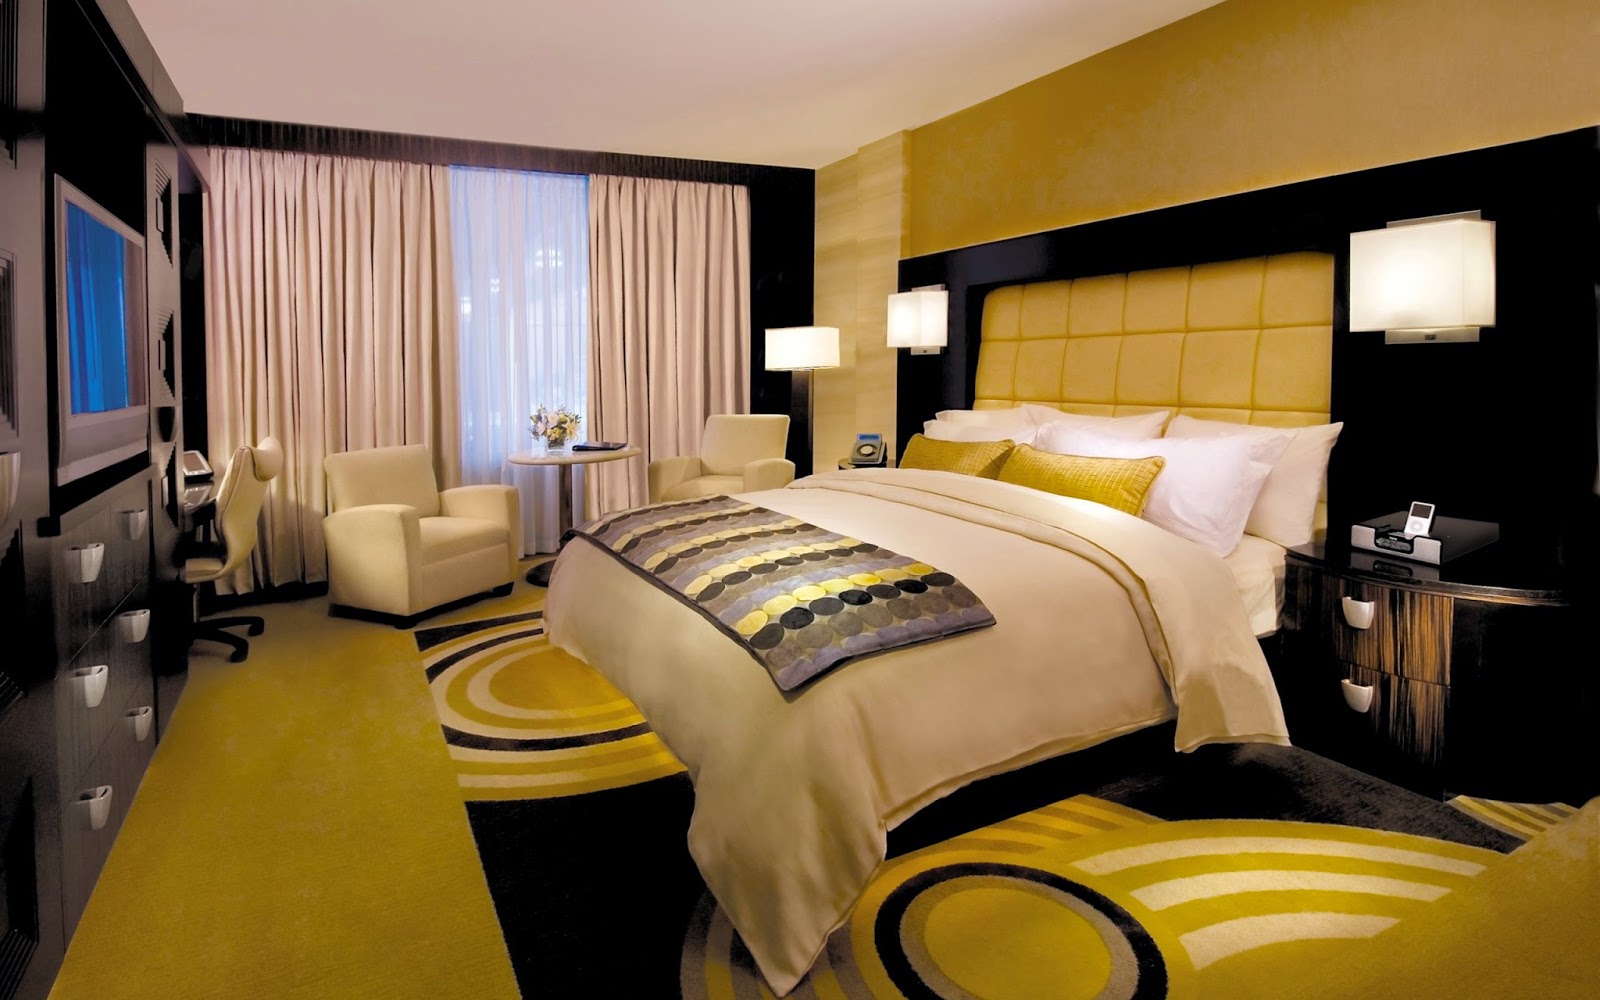 Gambar Hotel  Bintang  Lima Wanderlushed com